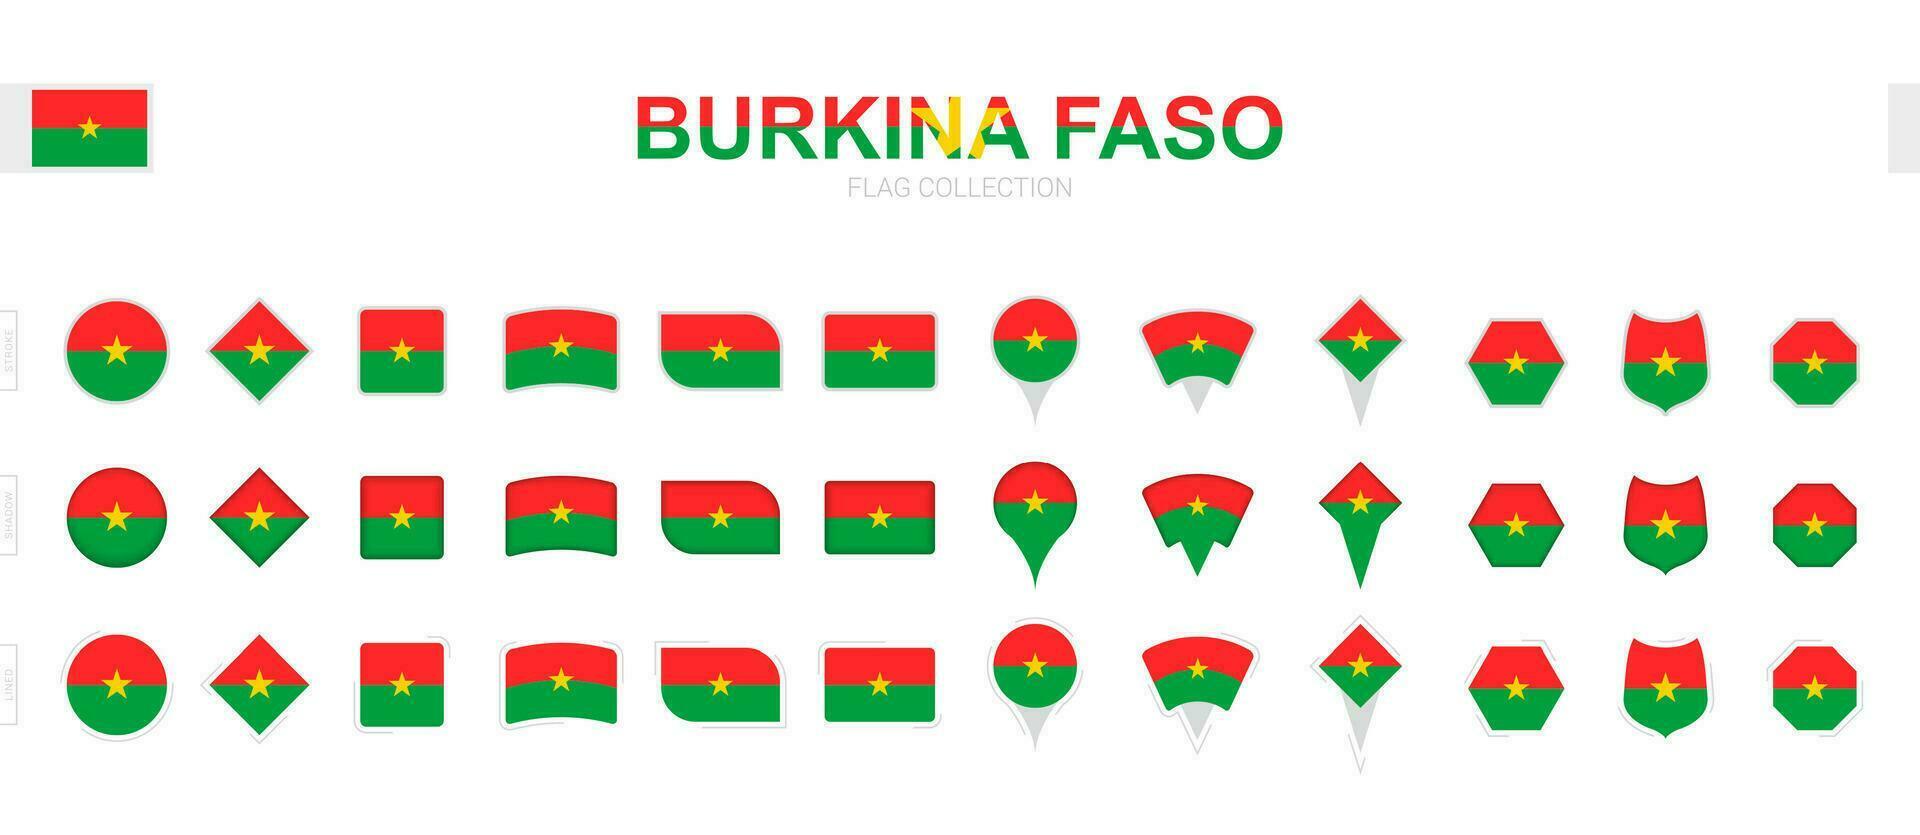 stor samling av Burkina faso flaggor av olika former och effekter. vektor